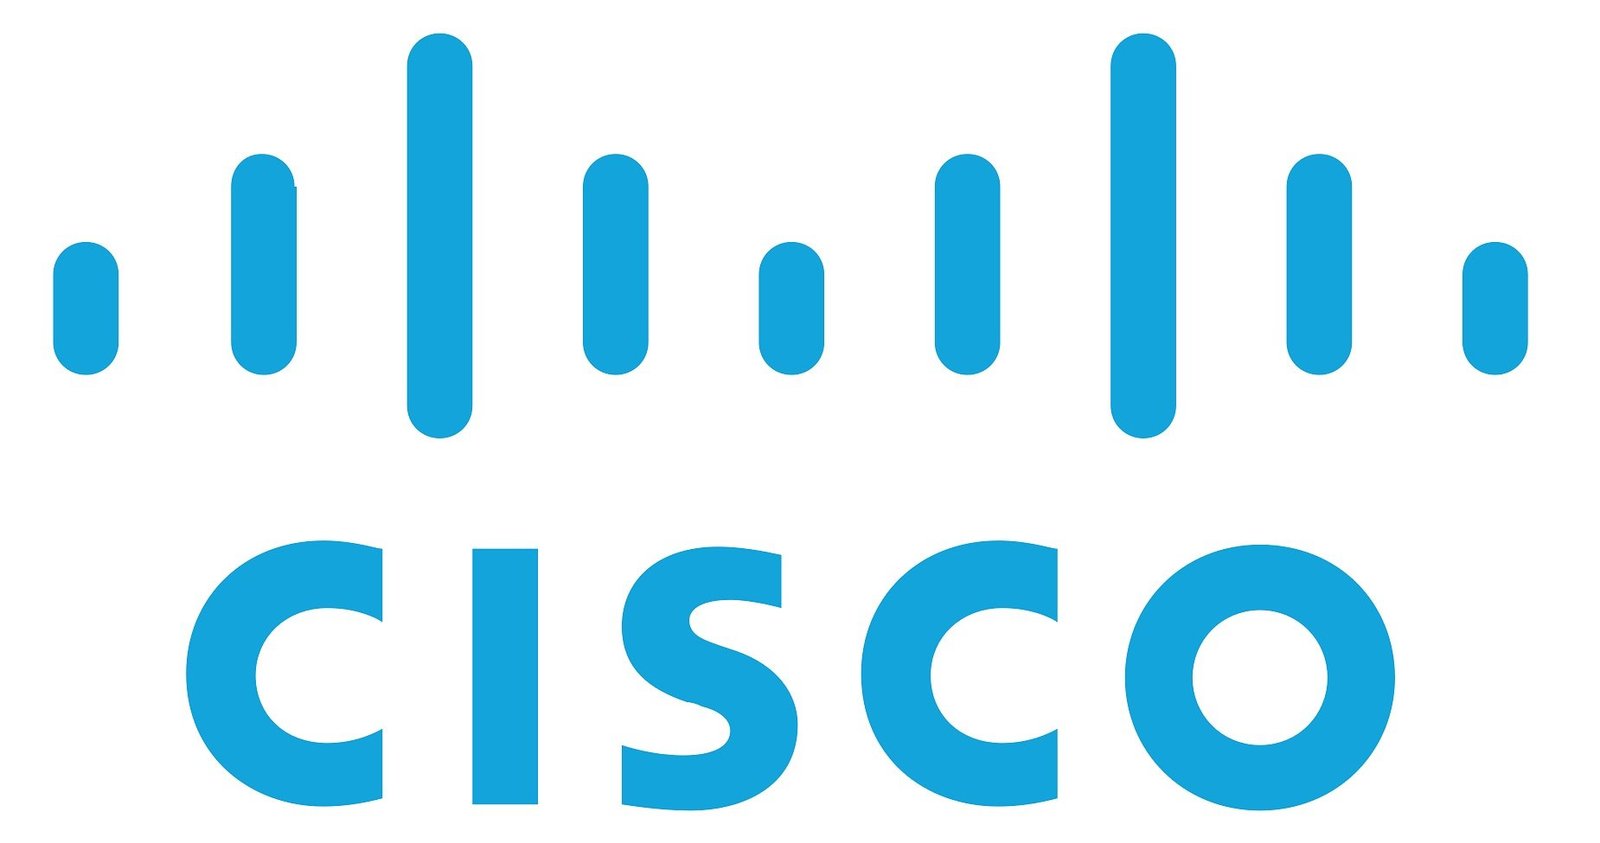 Cisco Recruitment 2022